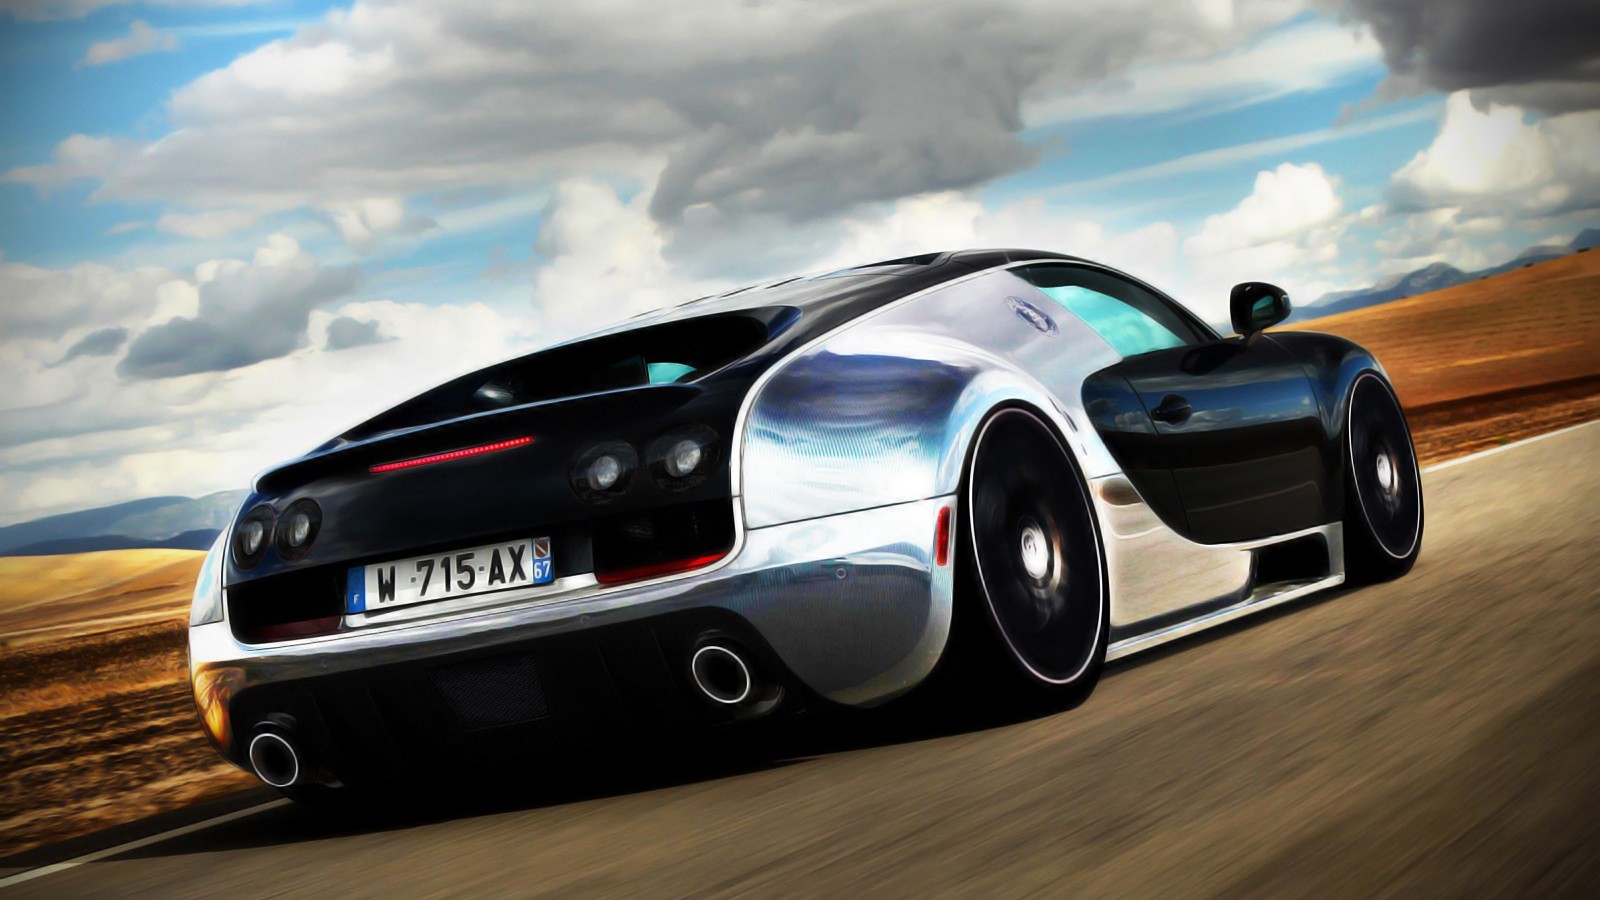 Ment To HD Bugatti Wallpaper For